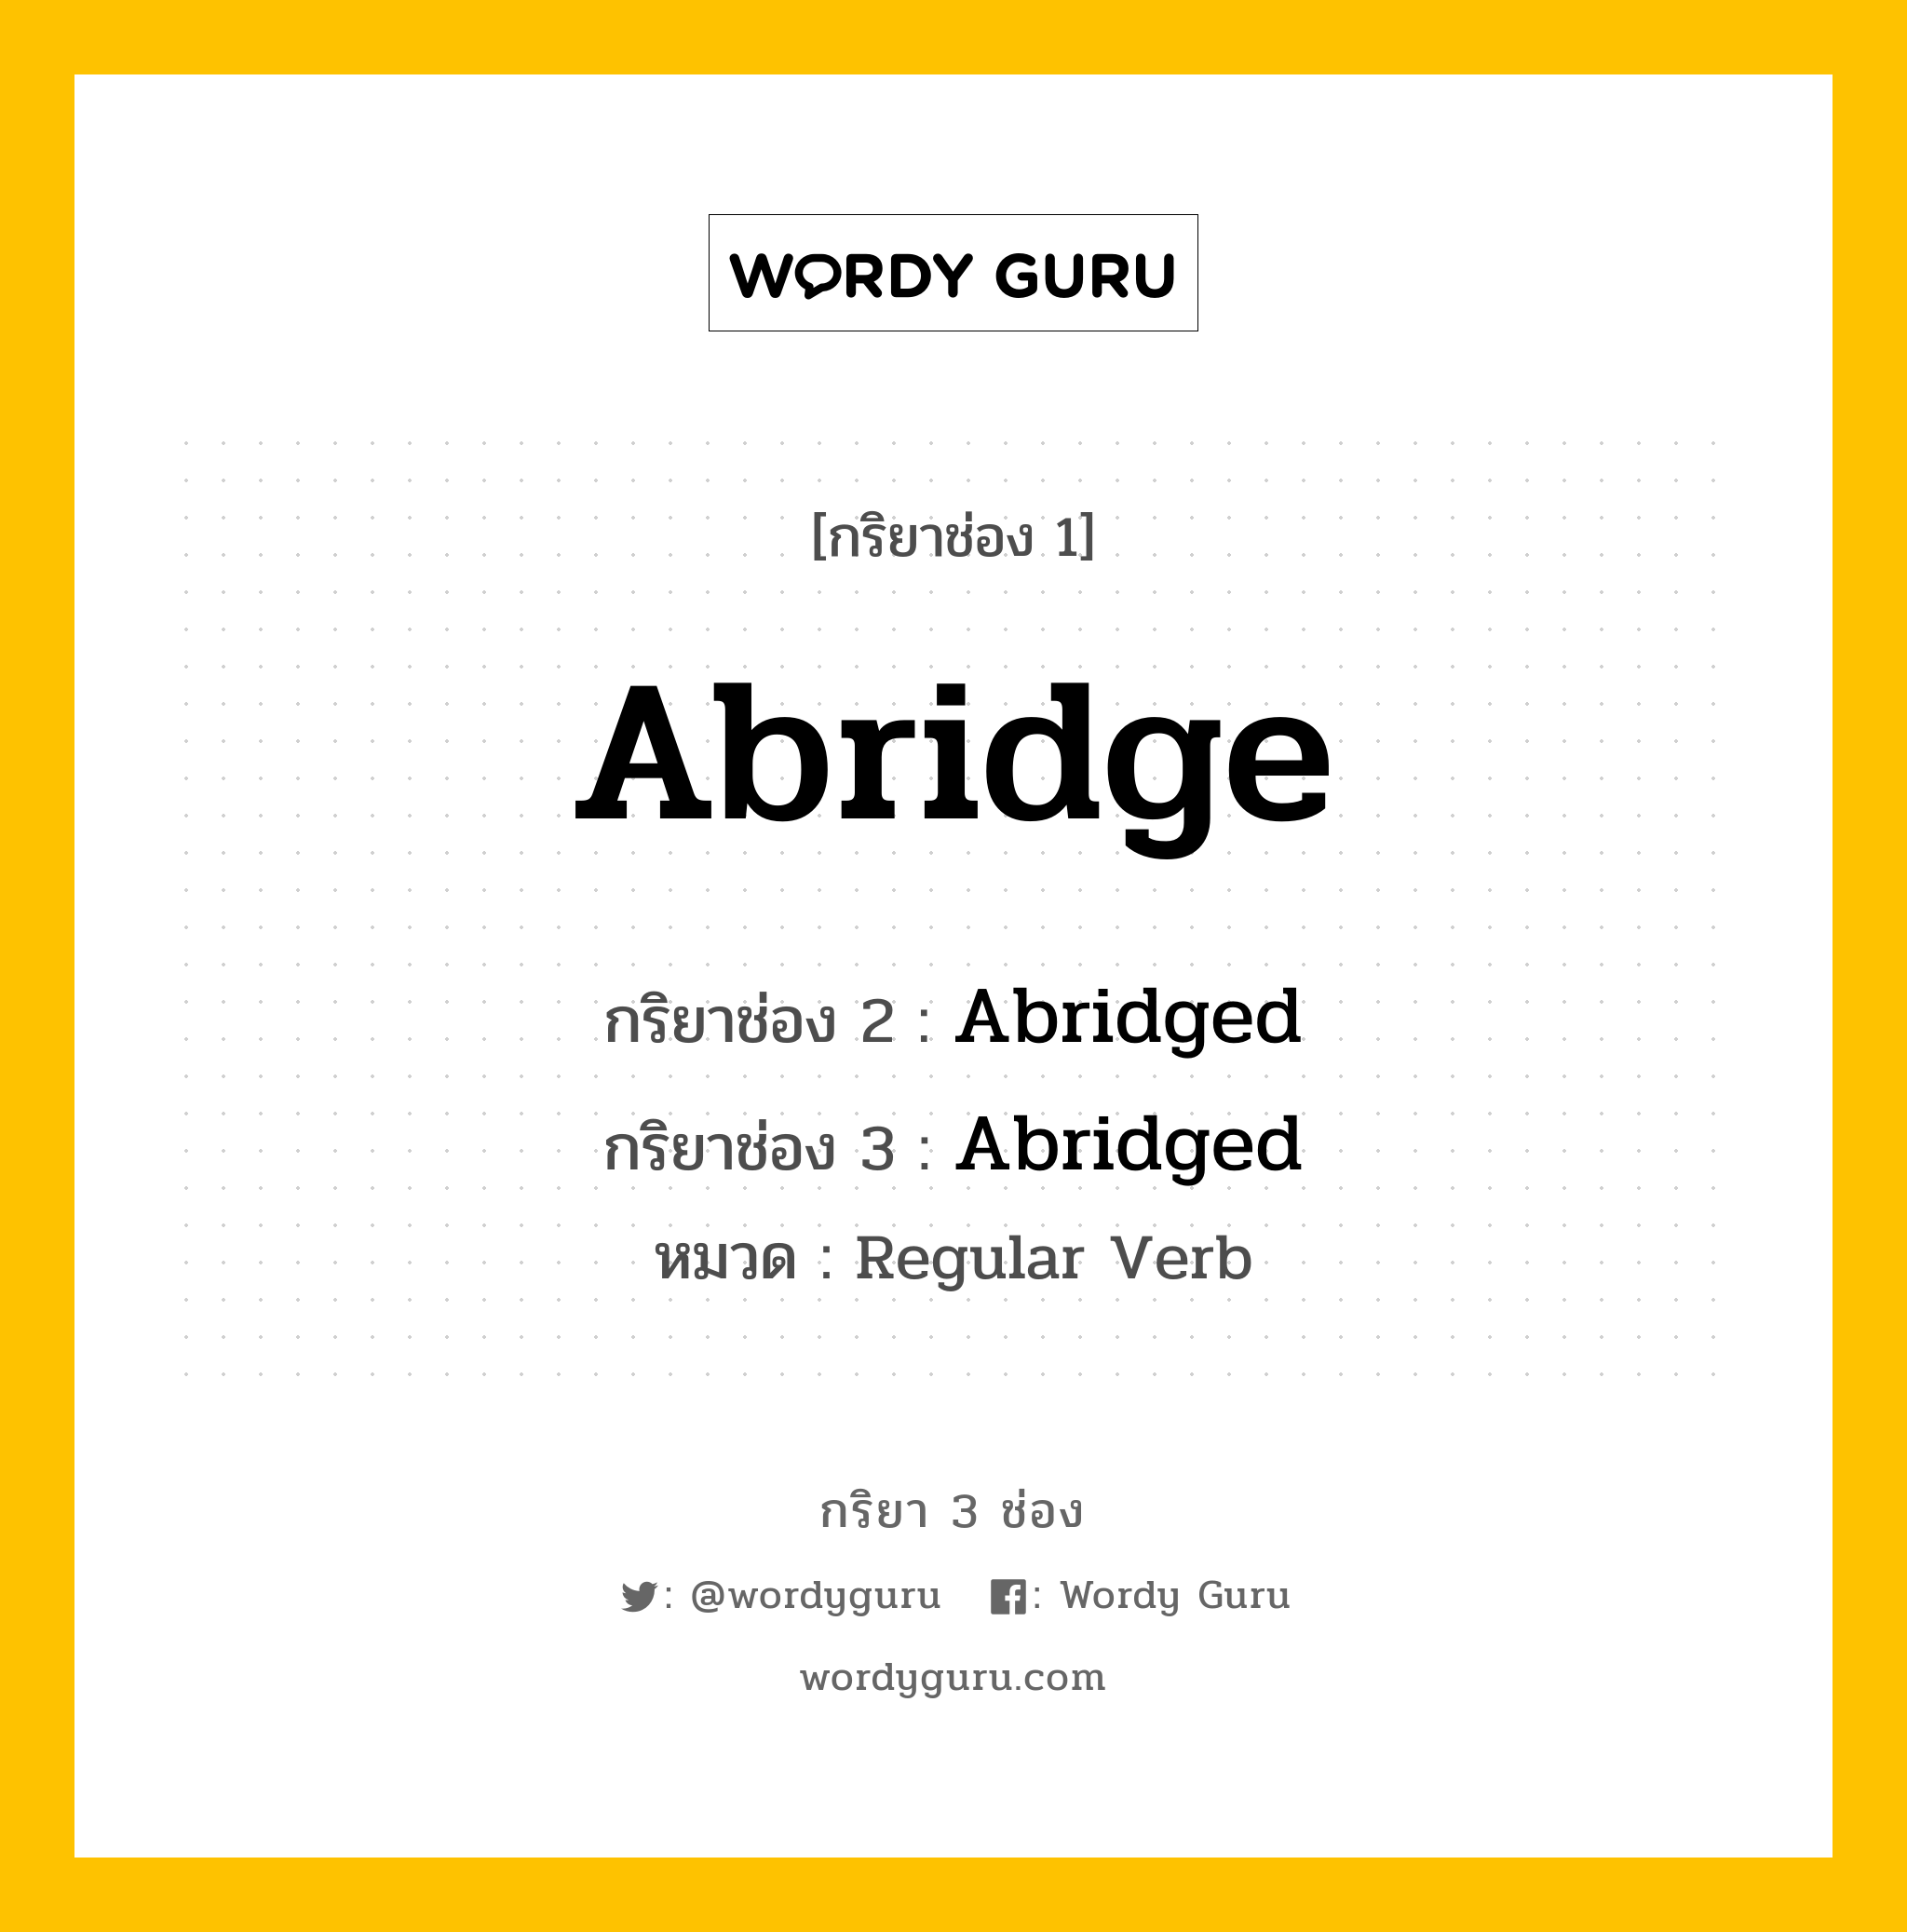 Abridge มีกริยา 3 ช่องอะไรบ้าง? คำศัพท์ในกลุ่มประเภท Regular Verb, กริยาช่อง 1 Abridge กริยาช่อง 2 Abridged กริยาช่อง 3 Abridged หมวด Regular Verb หมวด Regular Verb